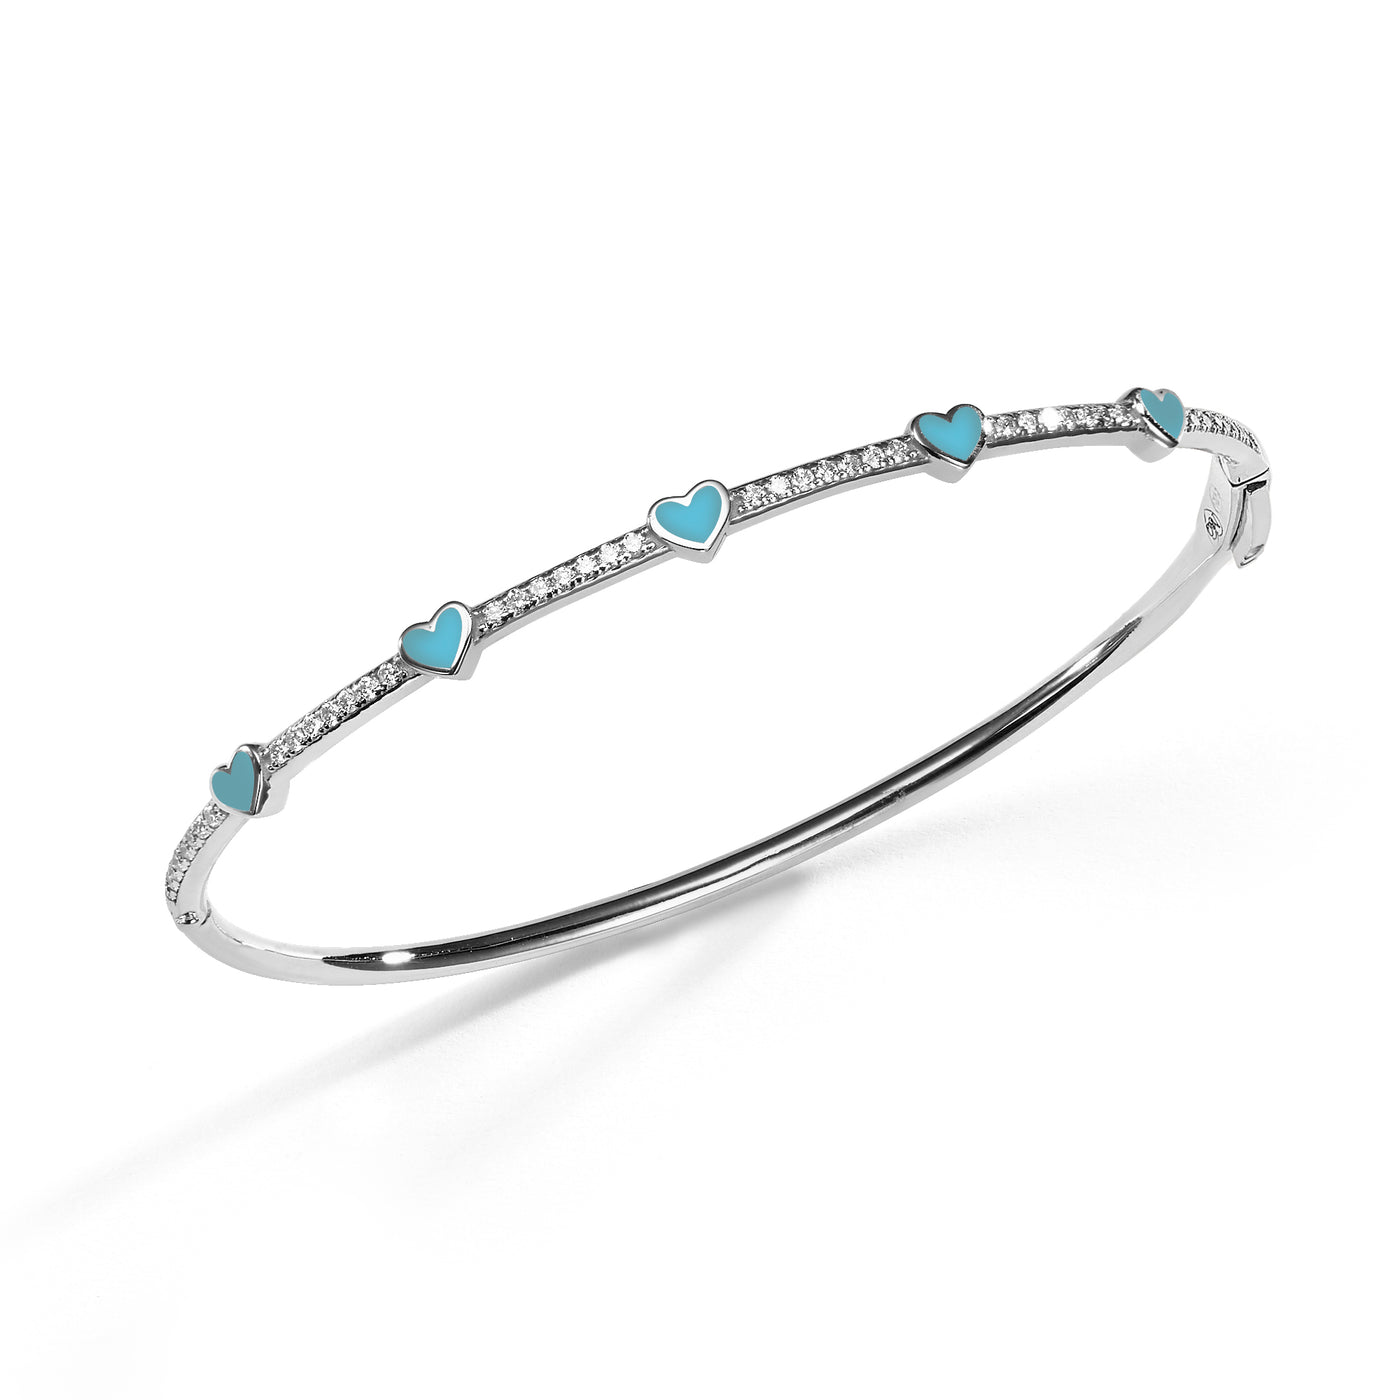 5 Hearts medium bangle bracelet- turquoise